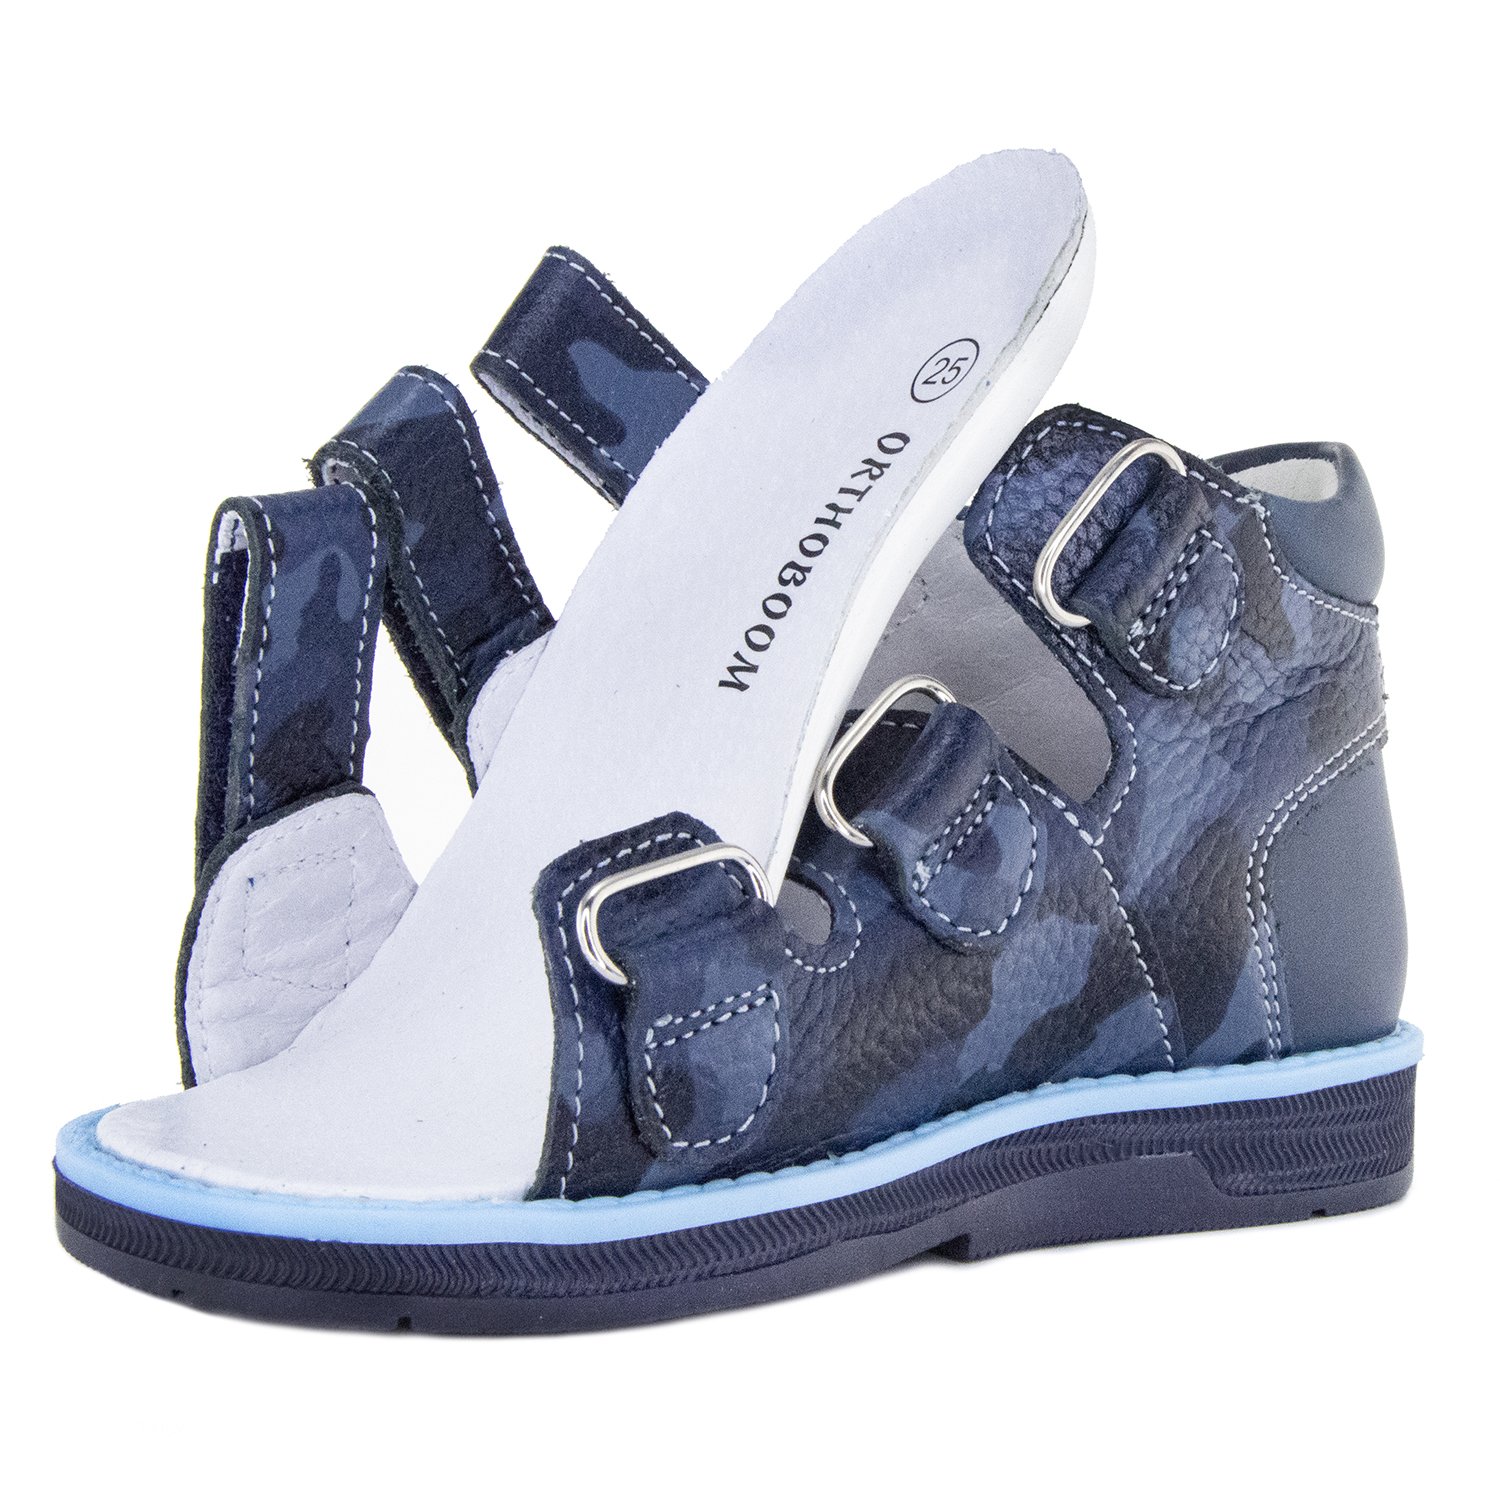 Детские сандалии ORTHOBOOM 25057-10 темно-синий милитари